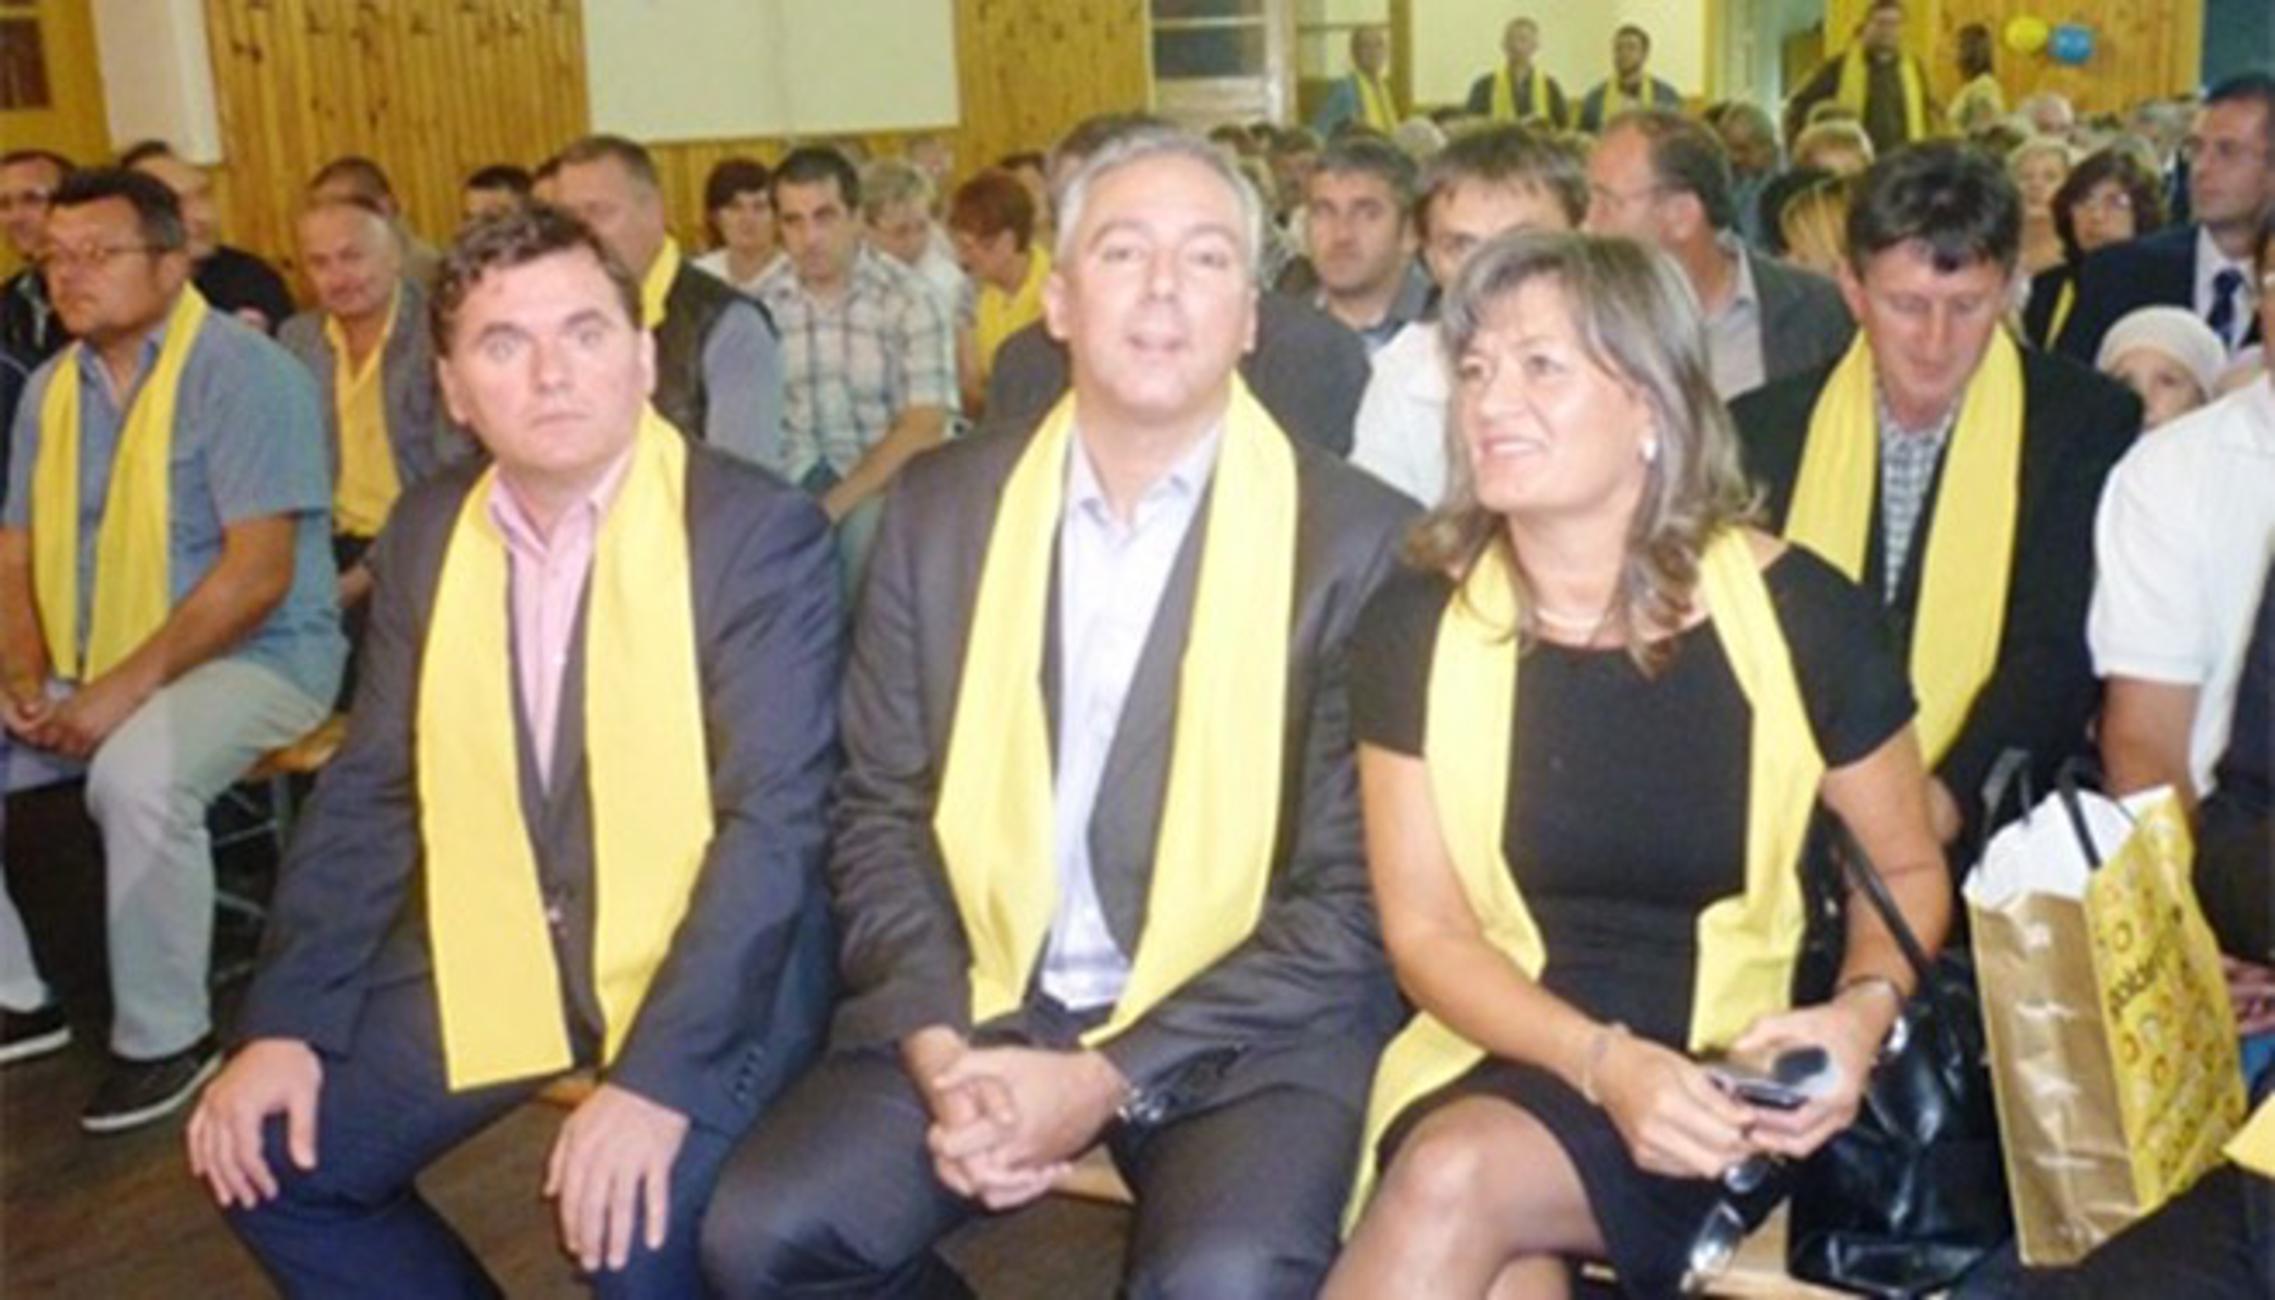 Liberali u Velikoj Kopanici - listopad 2011.